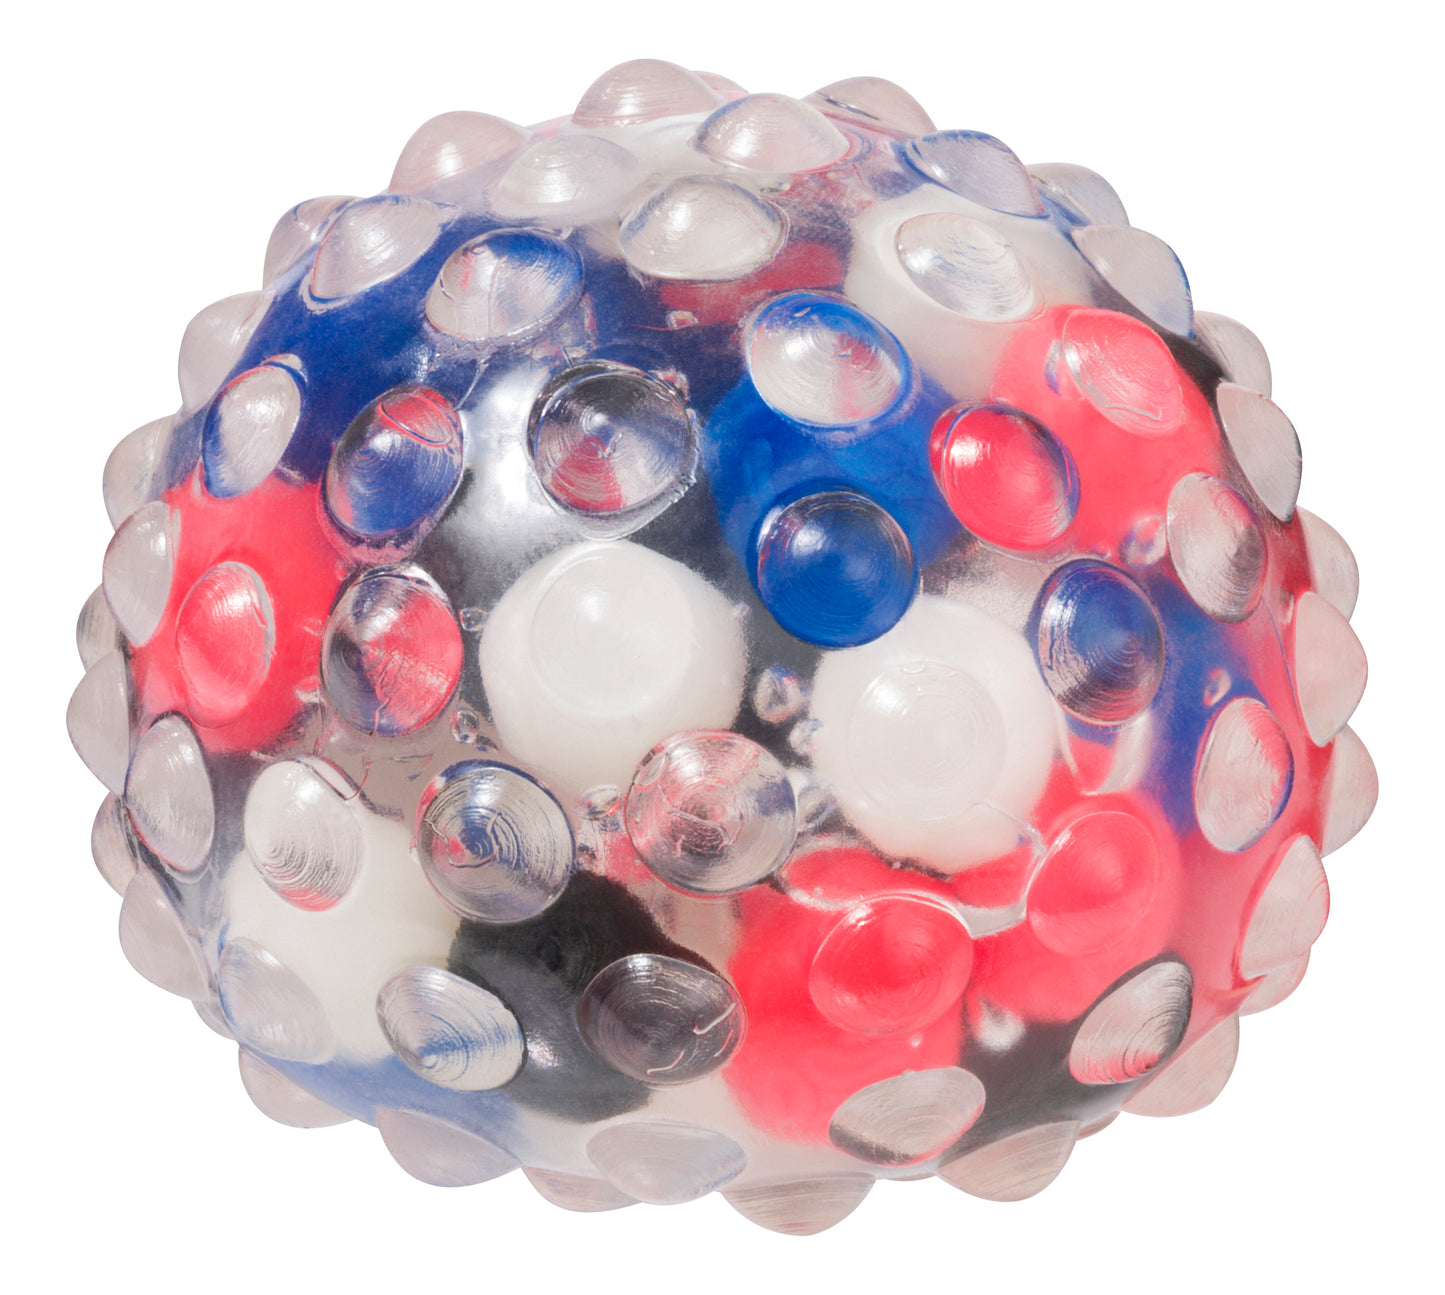 Toysmith Molecular Squish Ball